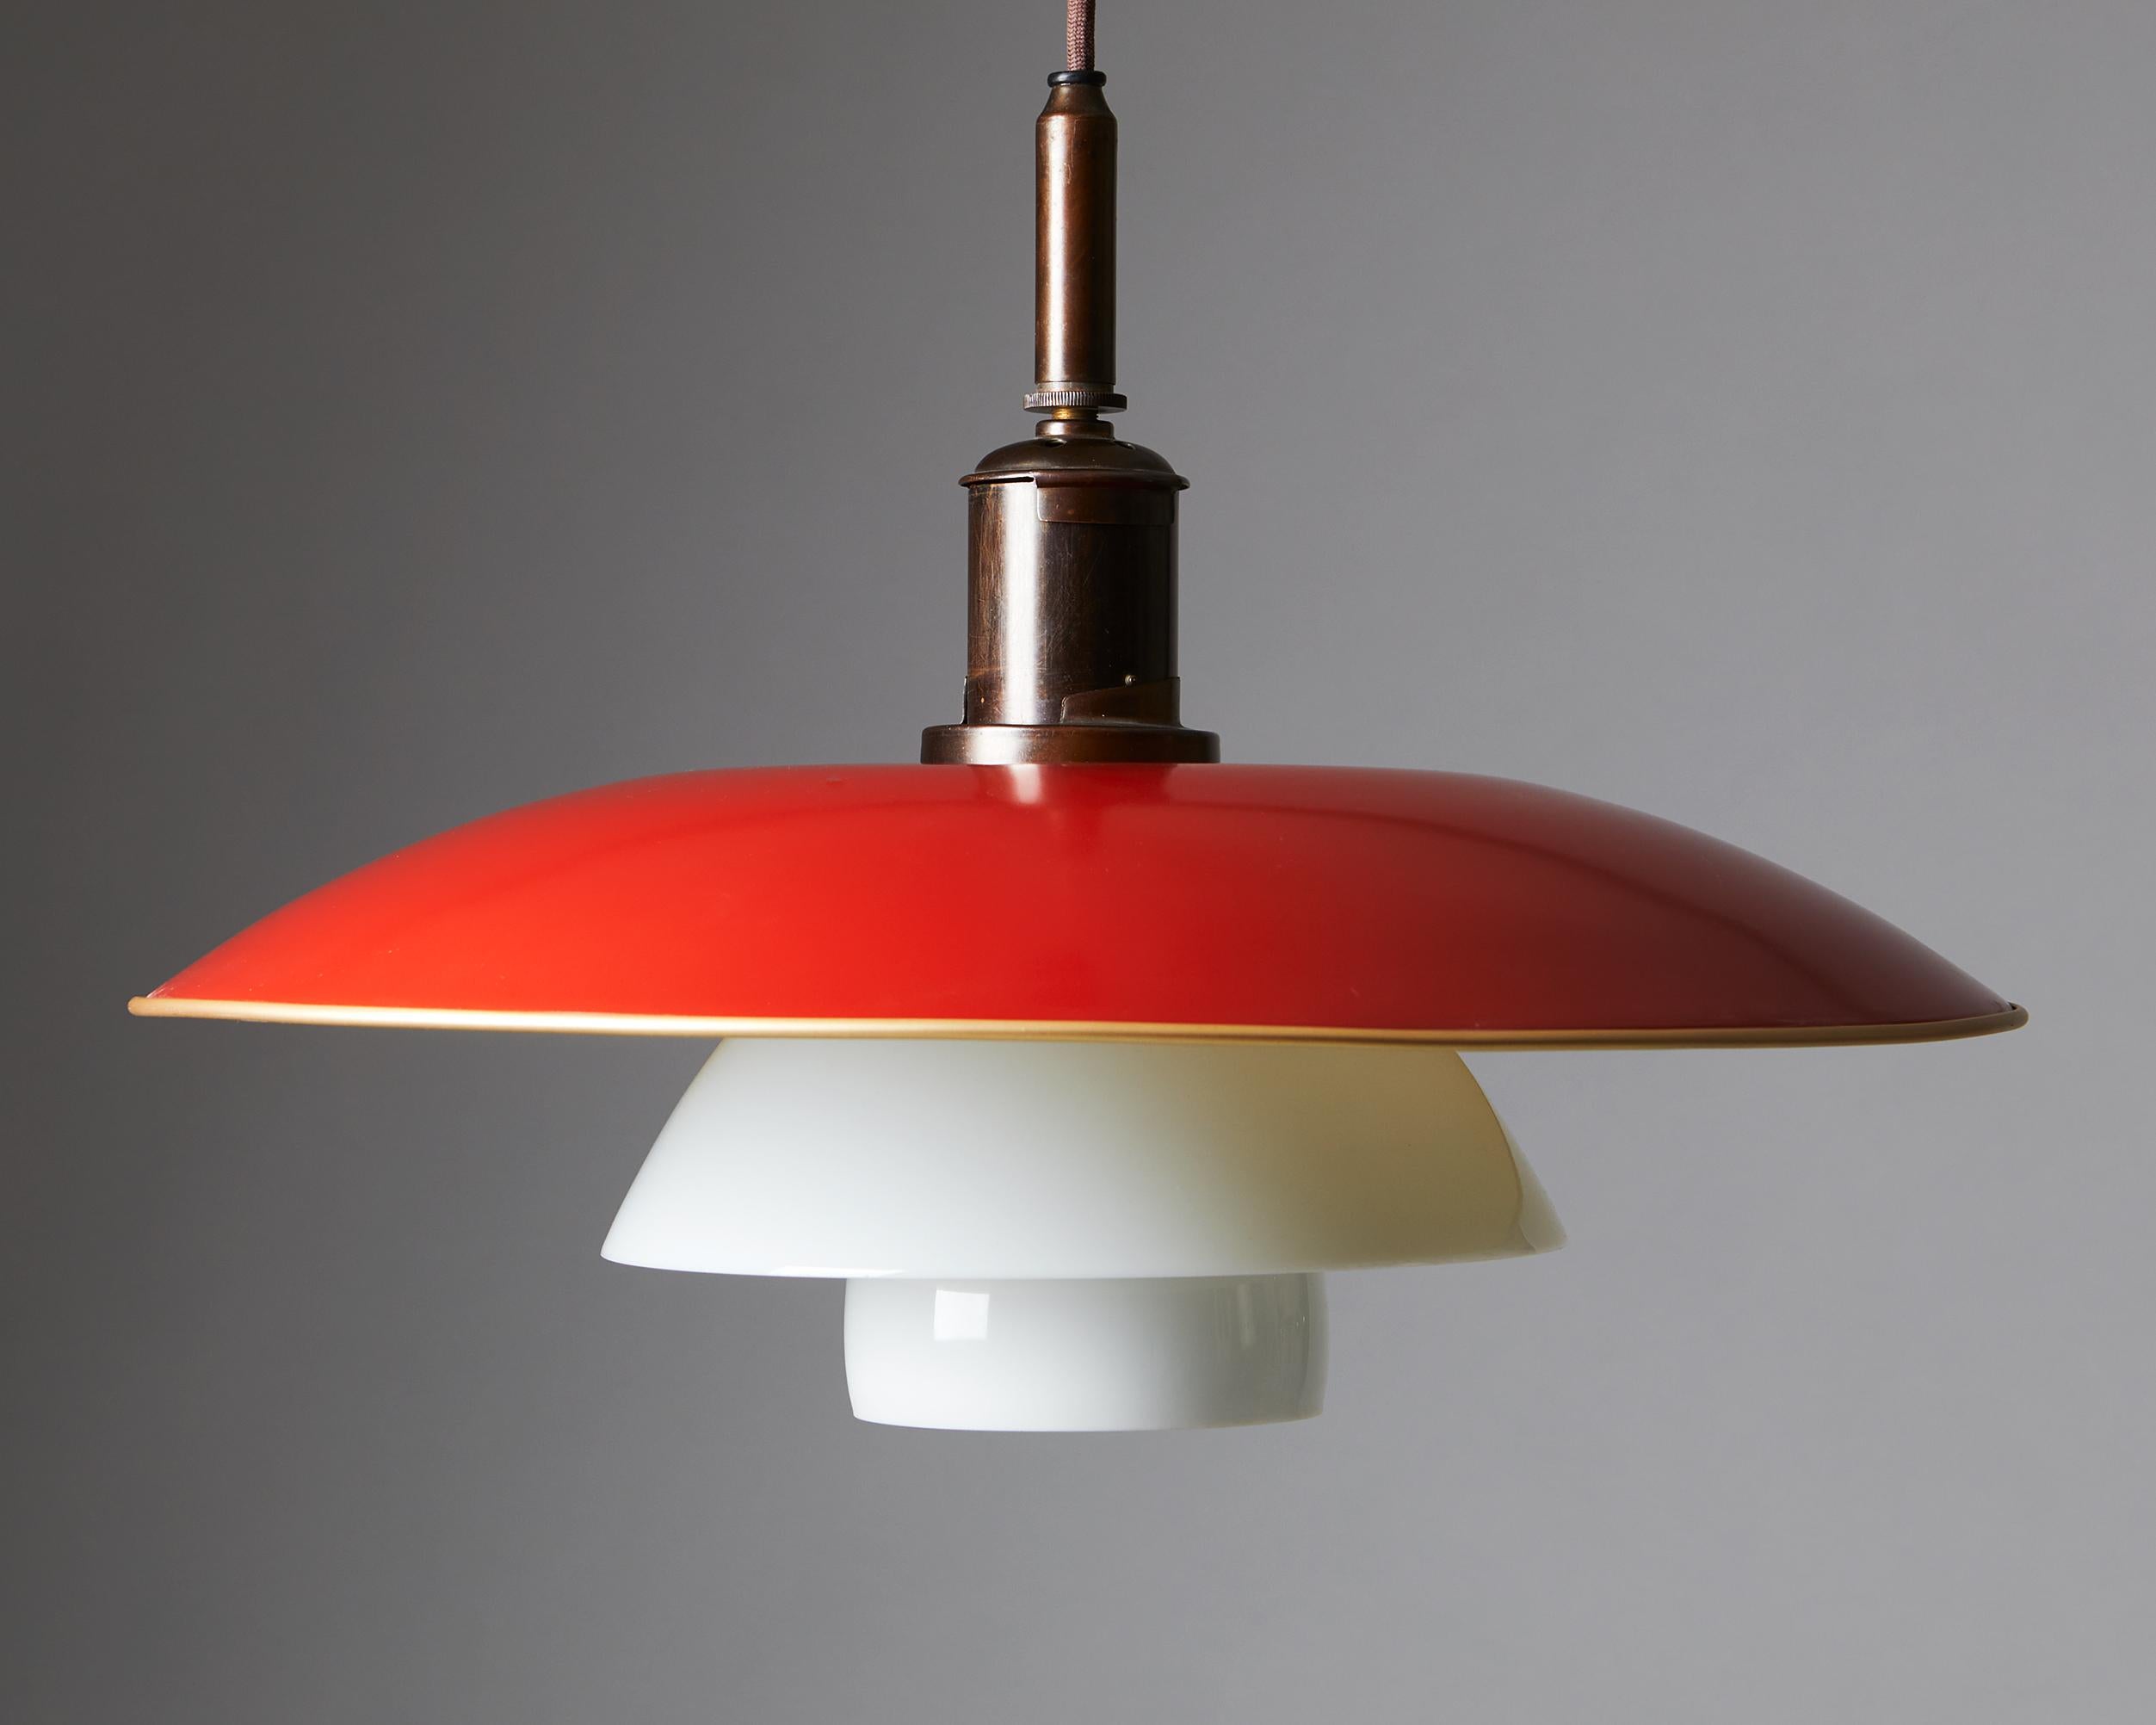 Mid-Century Modern Ceiling Lamp PH 5/4 Designed by Poul Henningsen for Louis Poulsen, Denmark